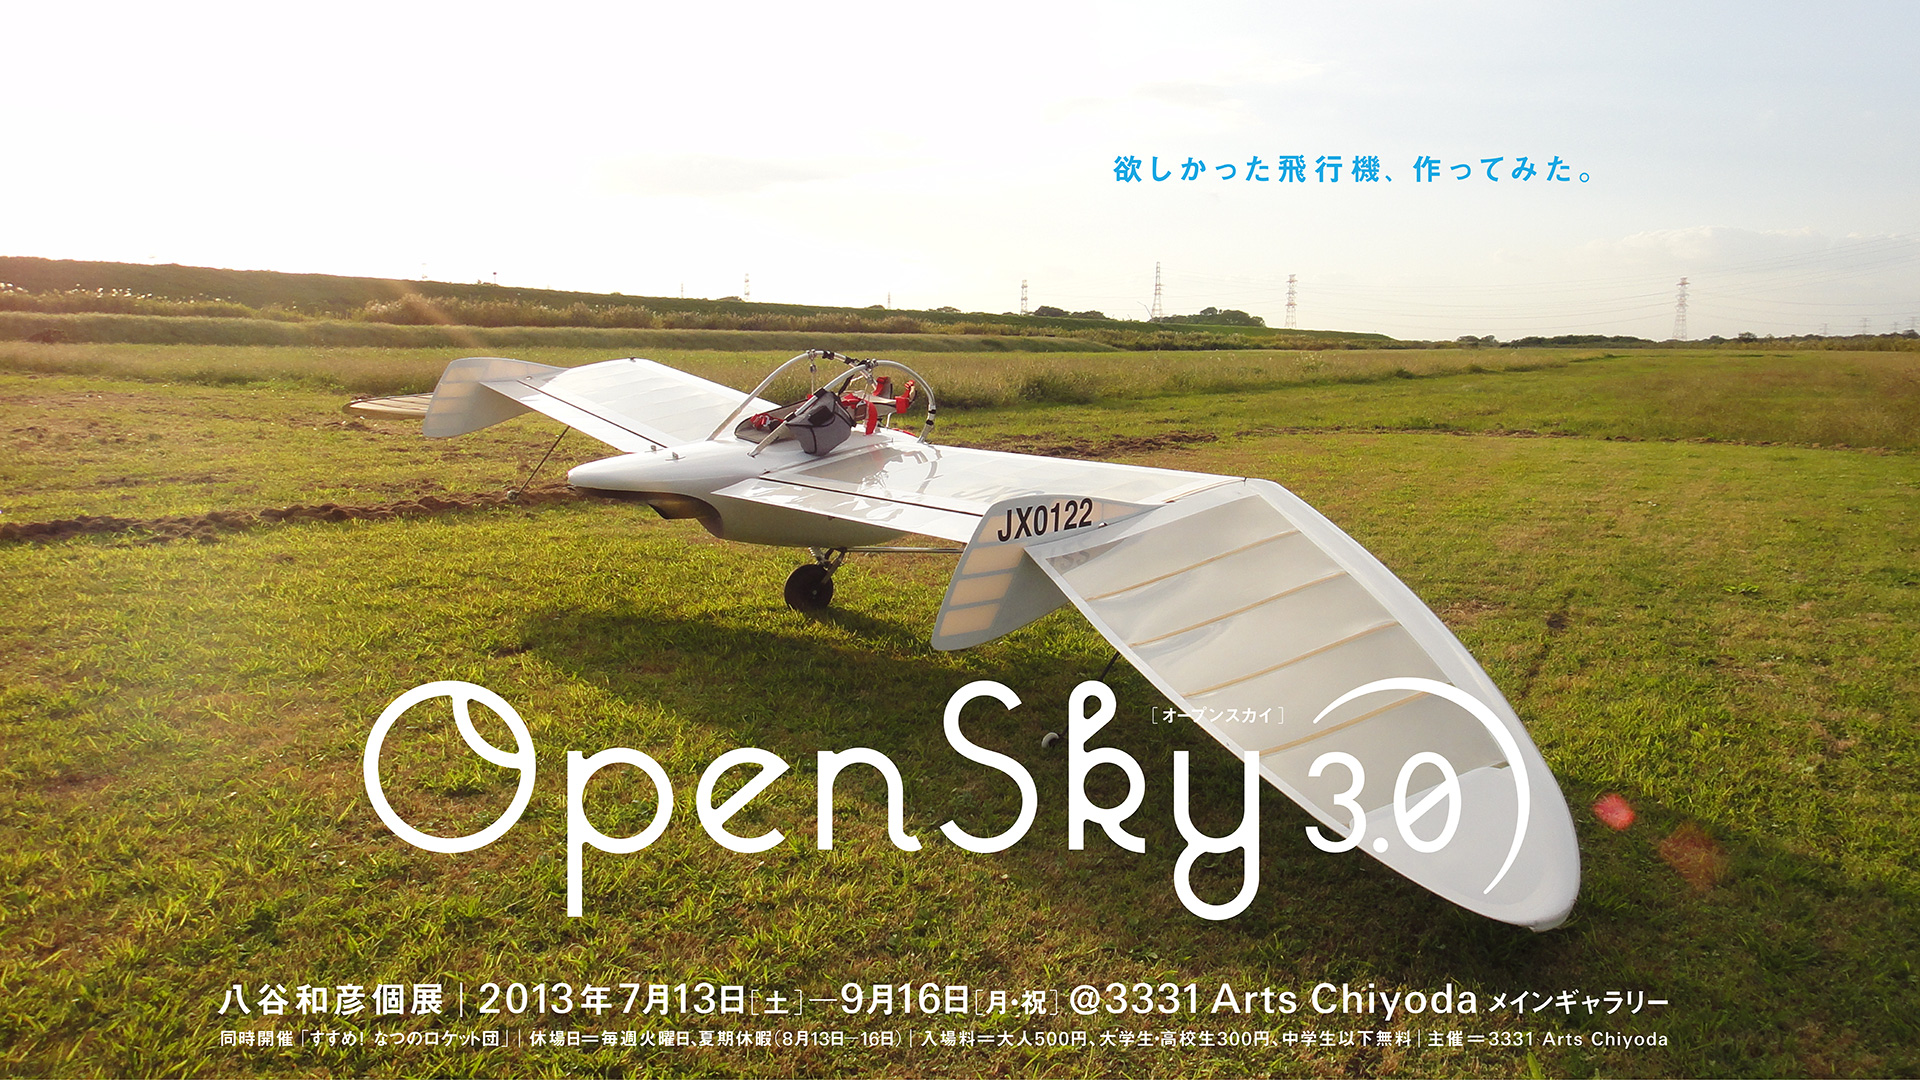 イベント 紙ひこうき博士の子ども向けワークショップ 八谷和彦 個展 Opensky 3 0 欲しかった飛行機 作ってみた 3331 Arts Chiyoda